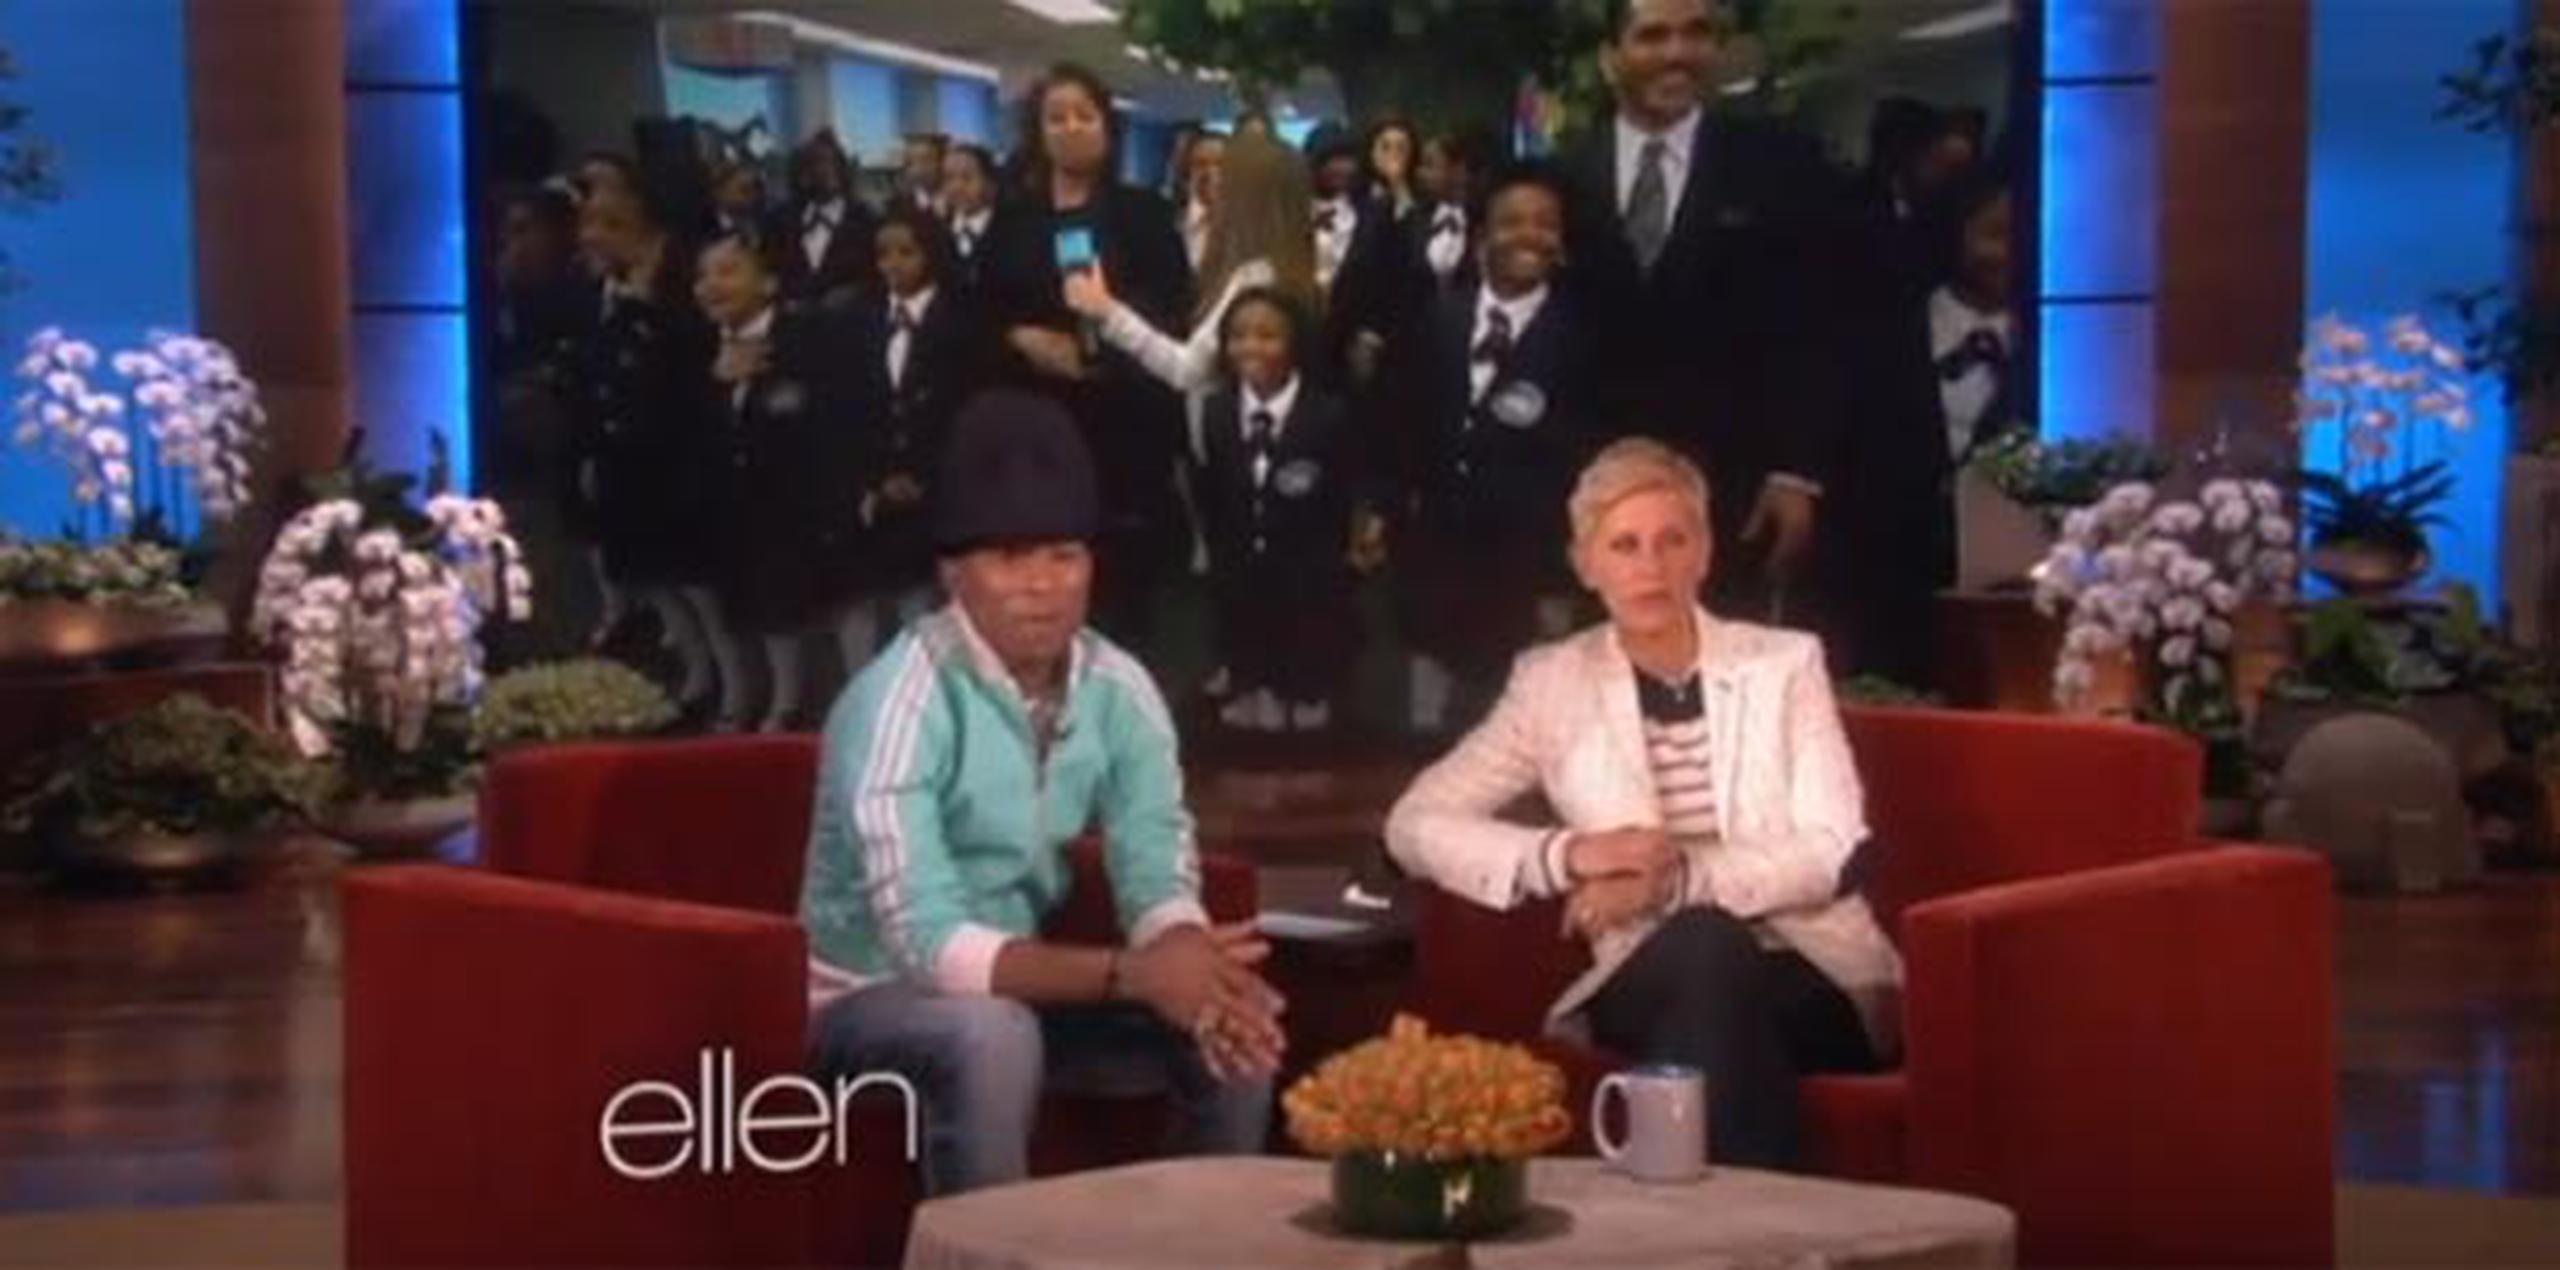 La sorpresa ocurrió hoy en el programa "The Ellen DeGeneres Show". (YouTube)